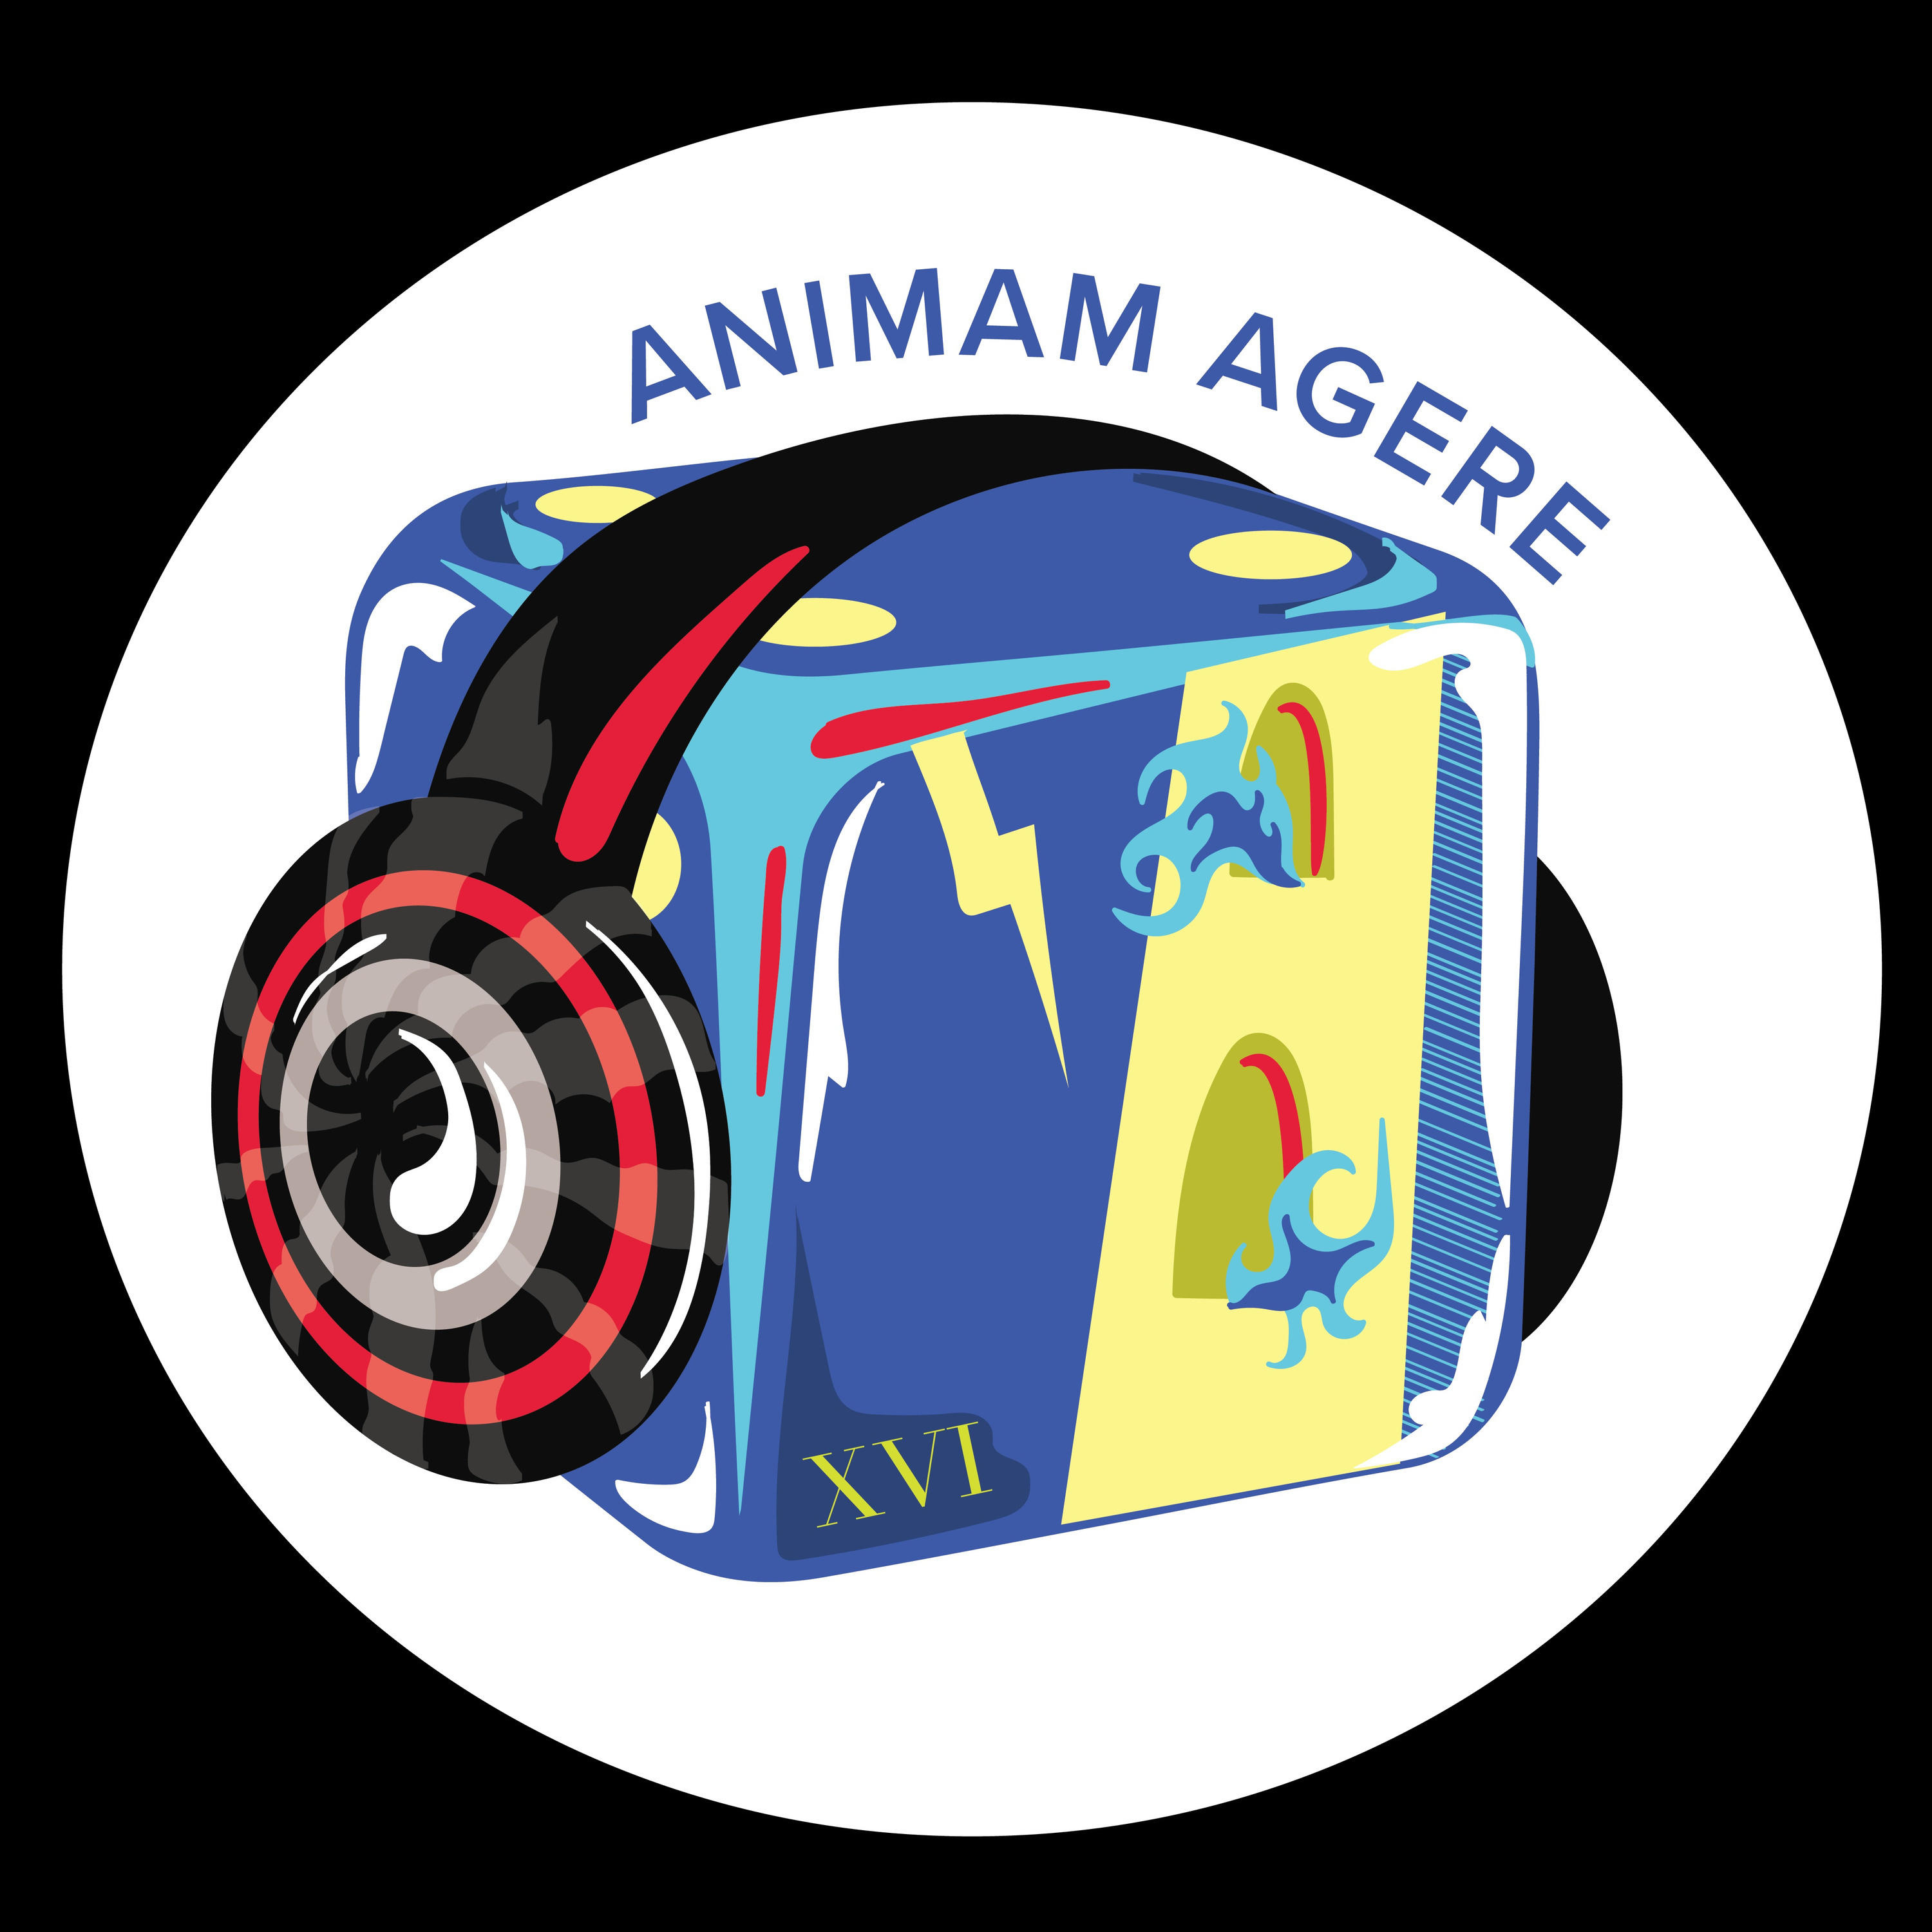 Animam Agere Bonus Episode - Mirrors